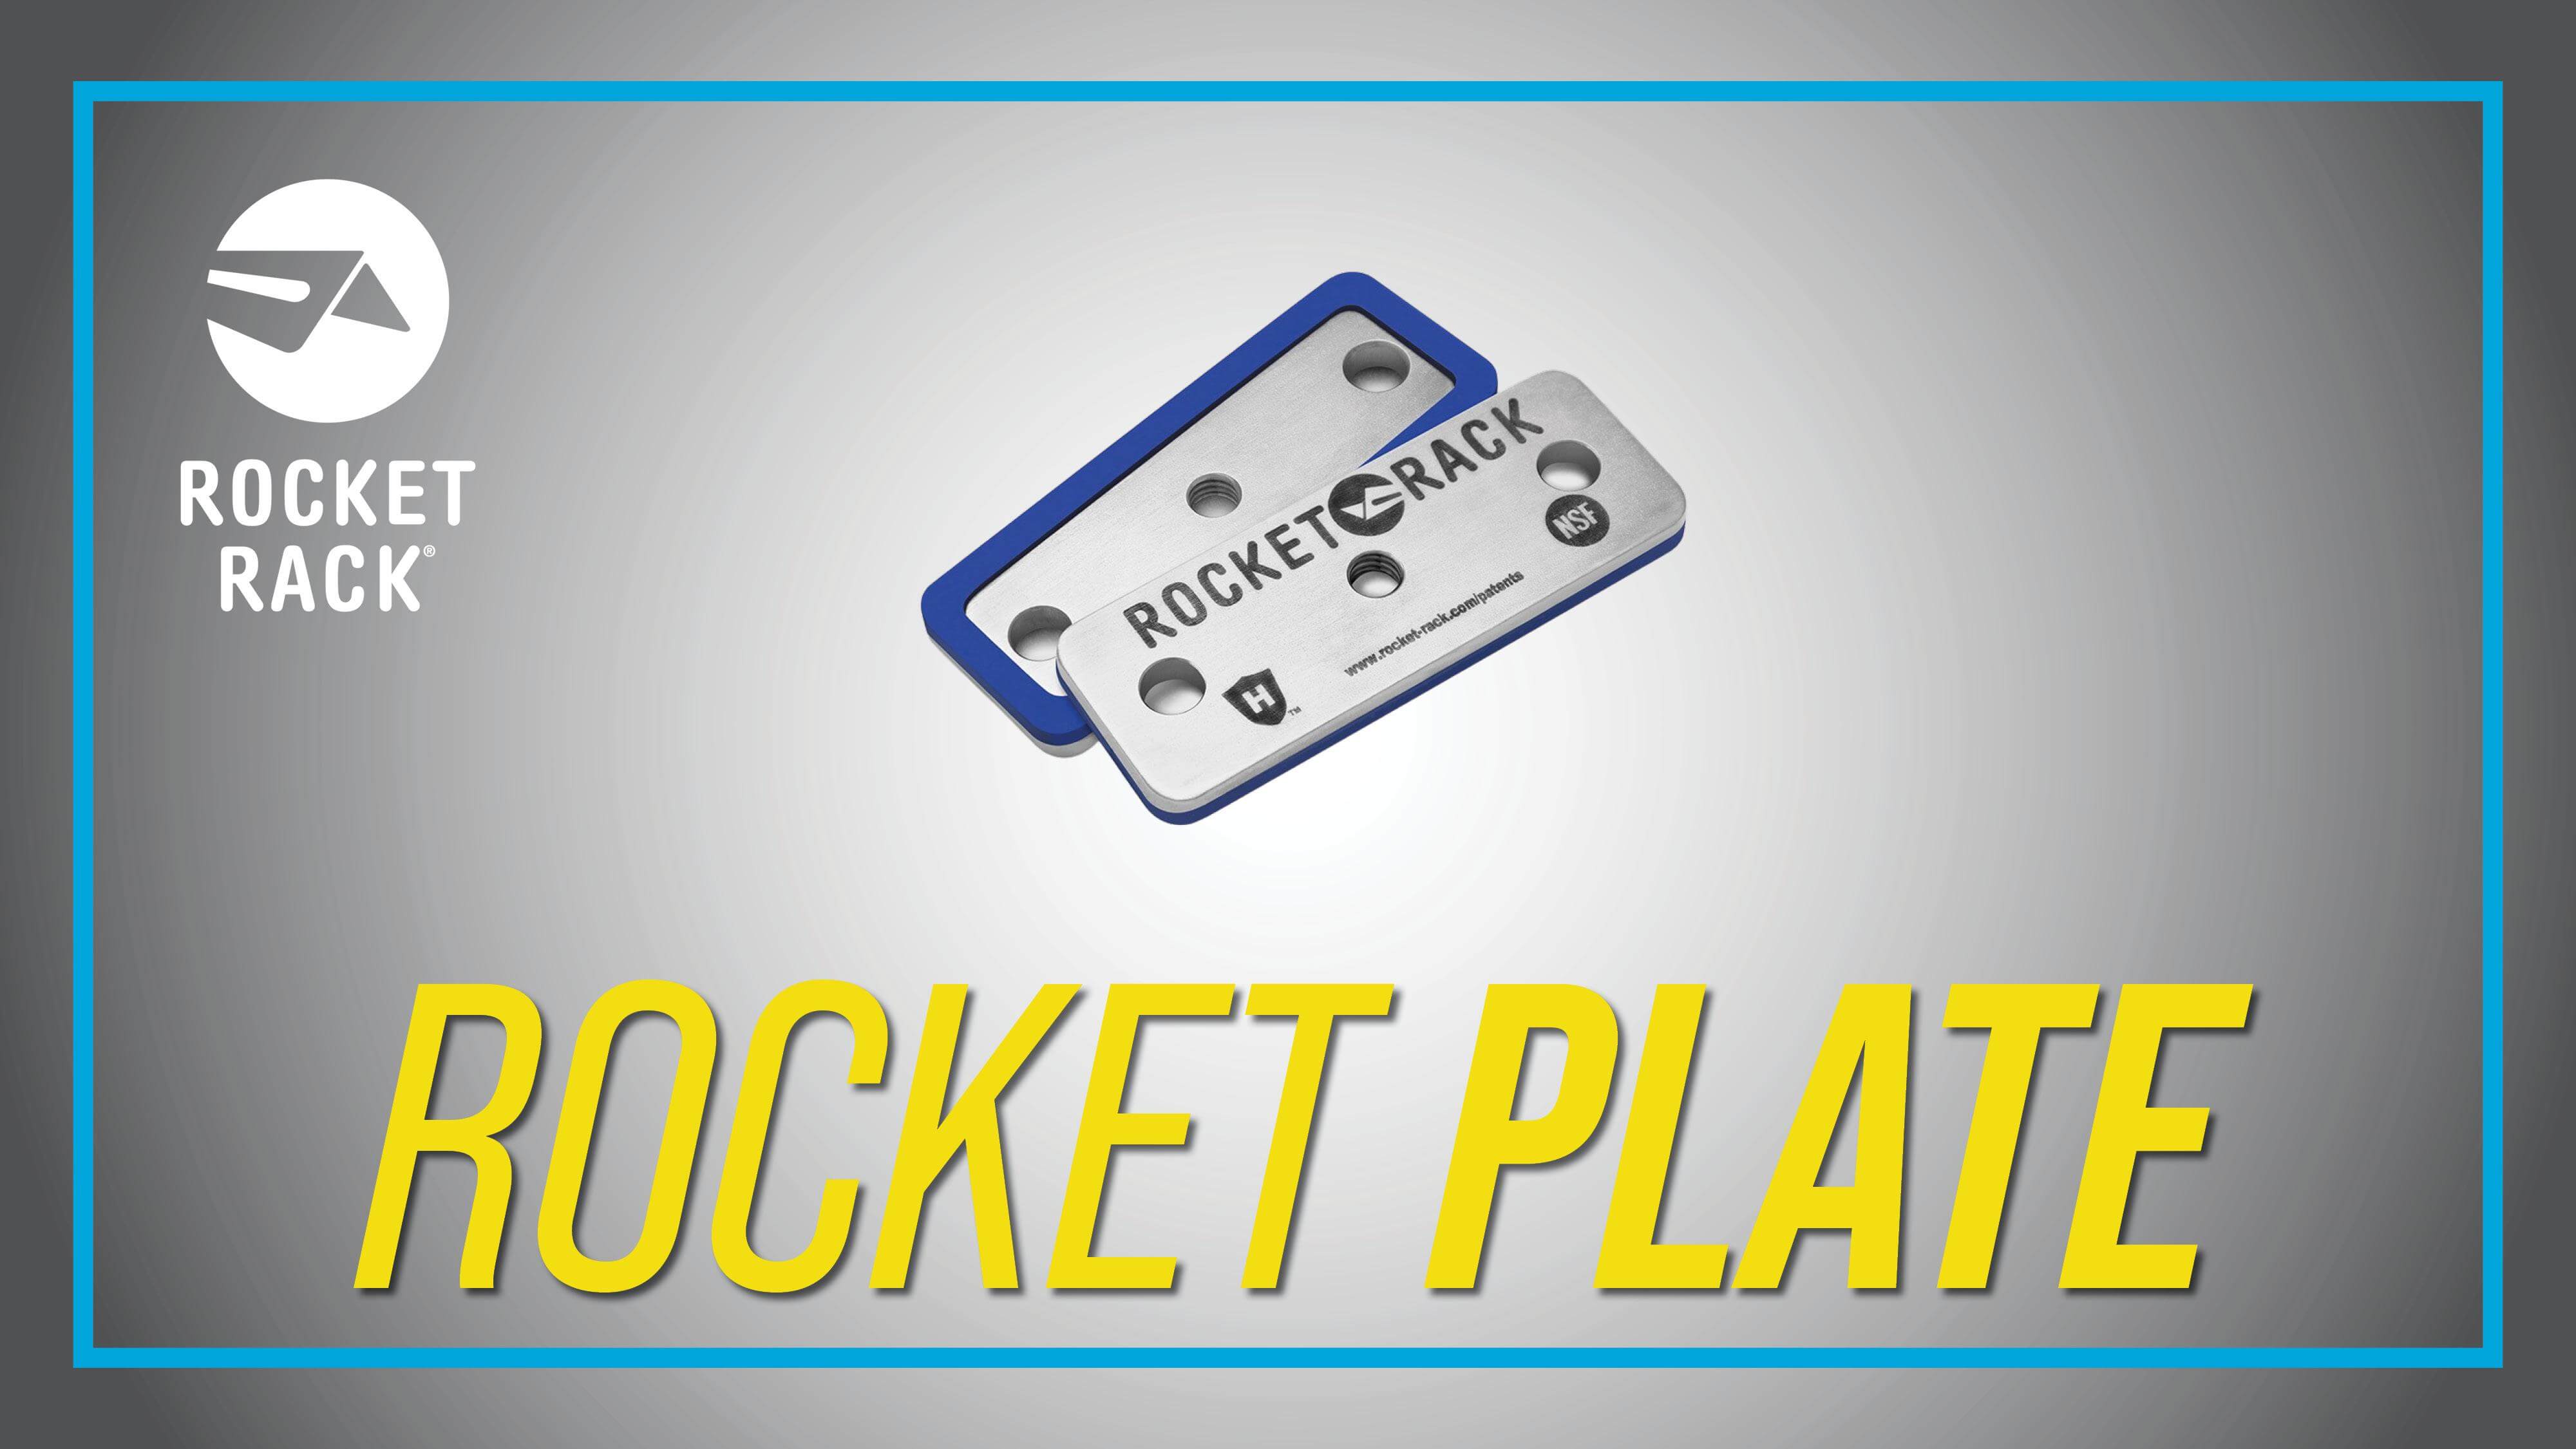 Rocket Plate by Rocket Rack